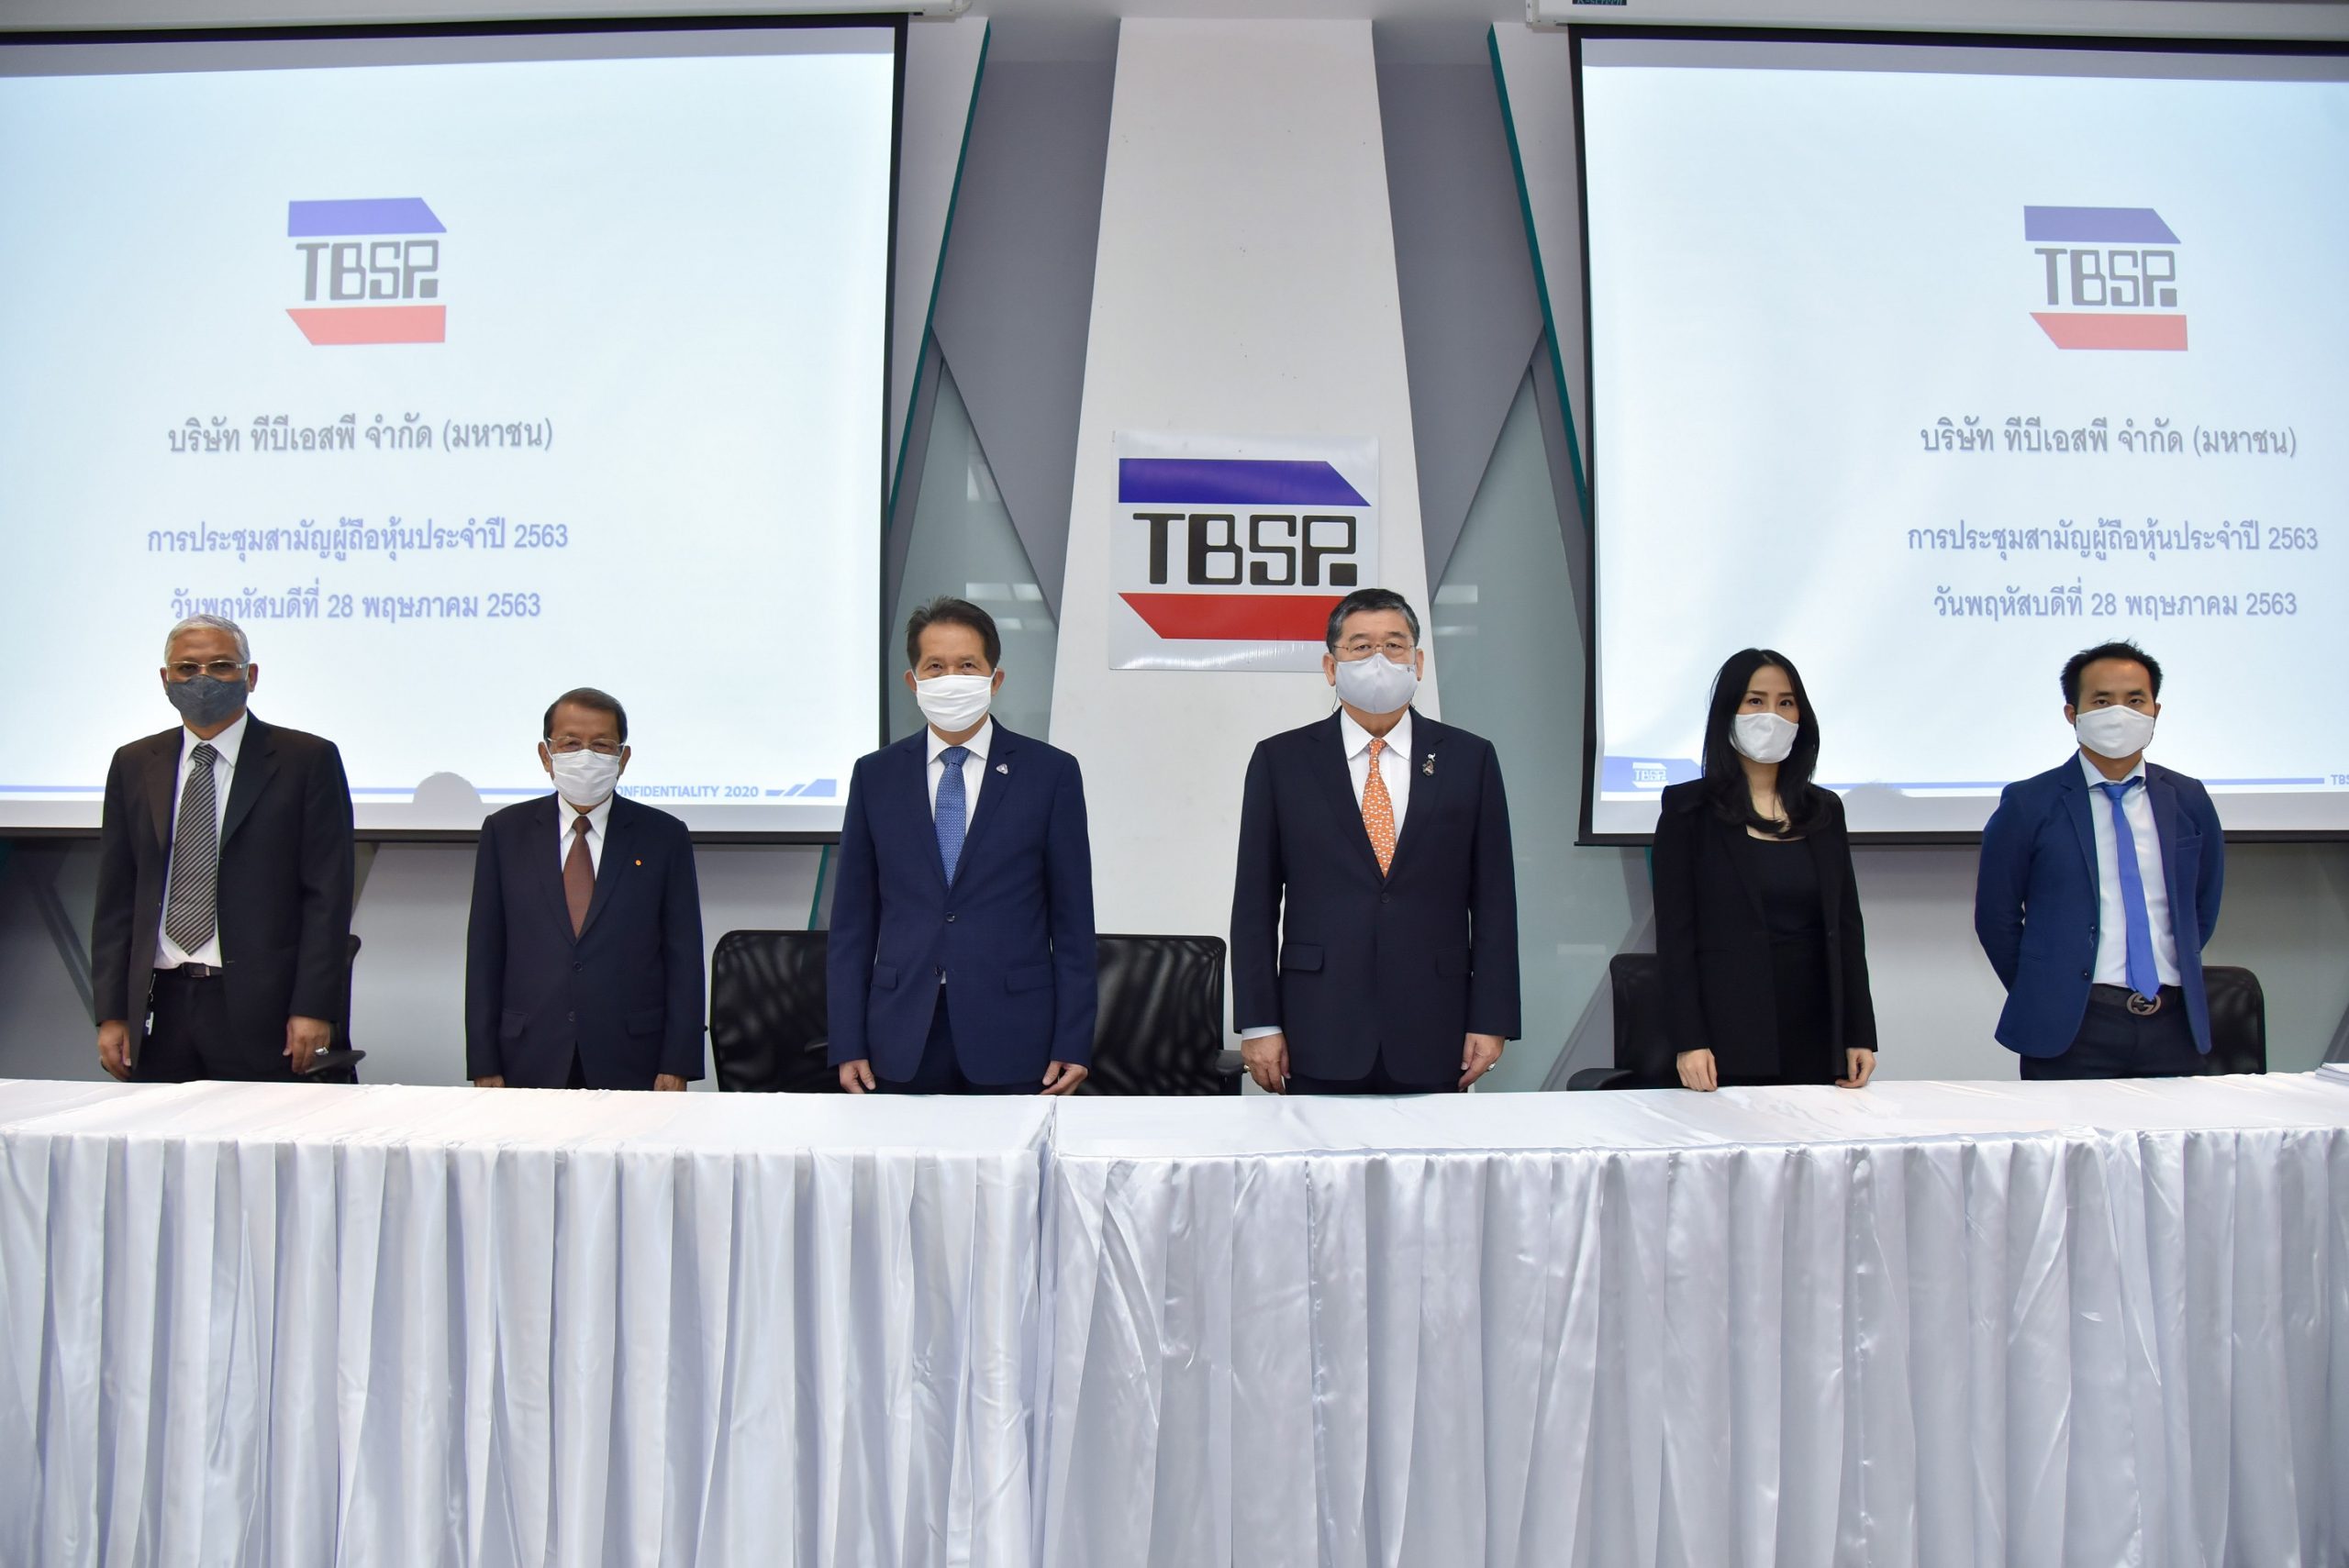 ภาพข่าว: TBSP จัดประชุมสามัญผู้ถือหุ้นประจำปี 2563 ไฟเขียวจ่ายปันผลรวม 1.13 บาท/หุ้น